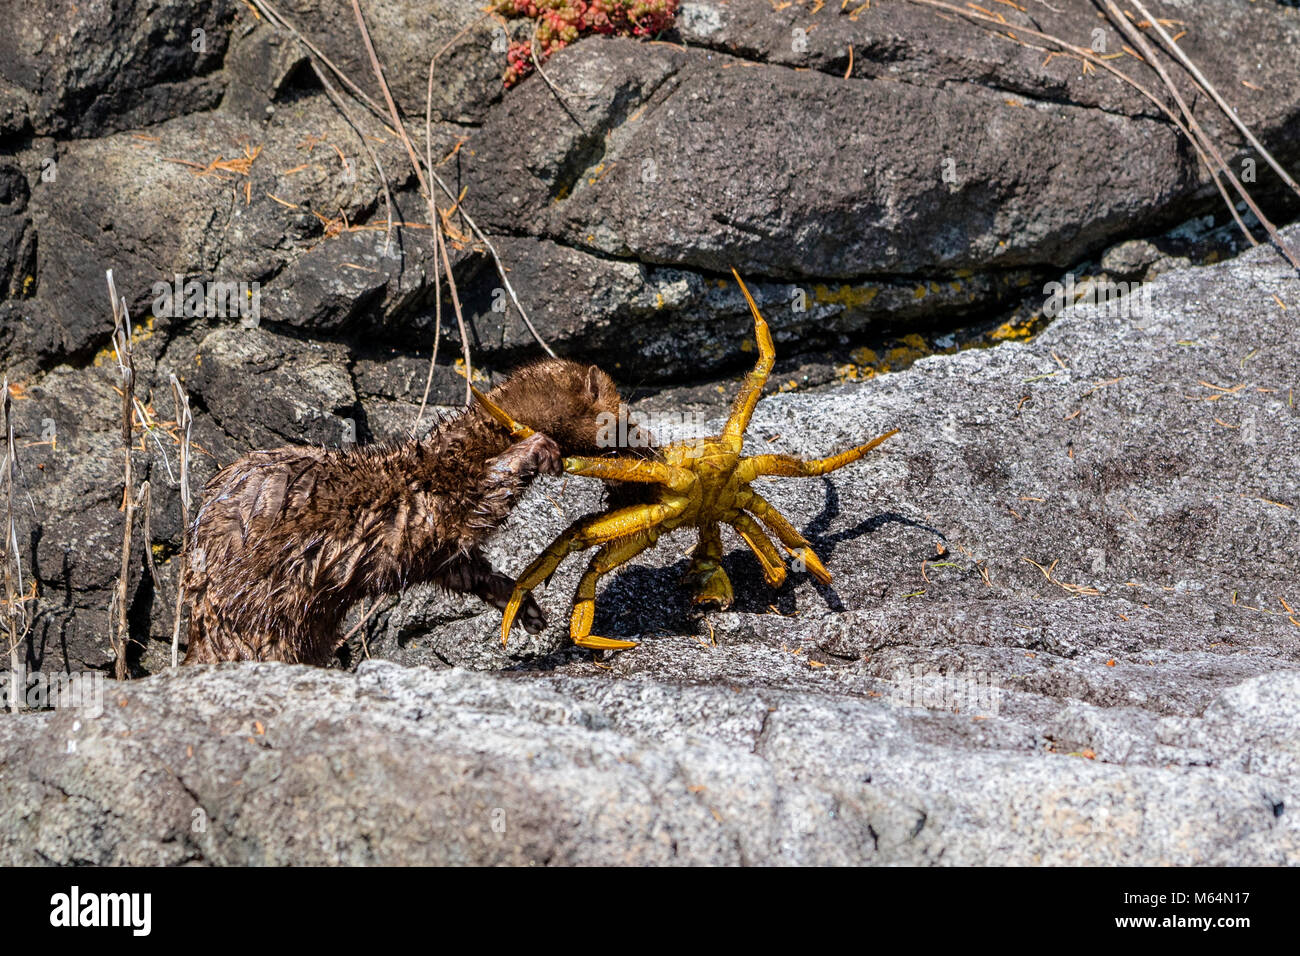 Le vison se battre avec un crabe sur un rivage dans le parc provincial marin de l'archipel de Broughton, le territoire des Premières Nations, de la C Banque D'Images